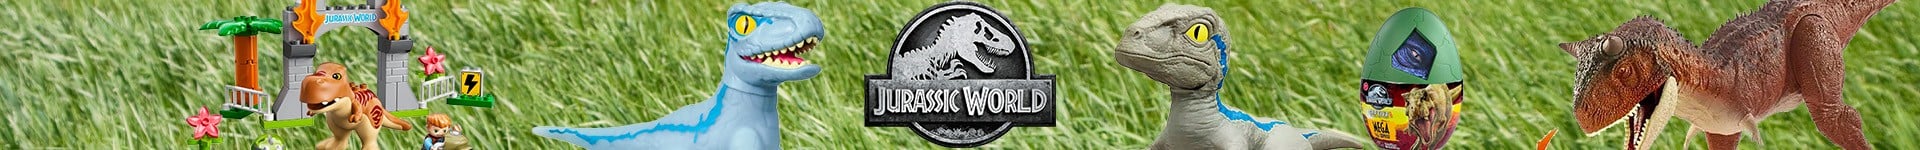 Jurassic World legetøj og spil